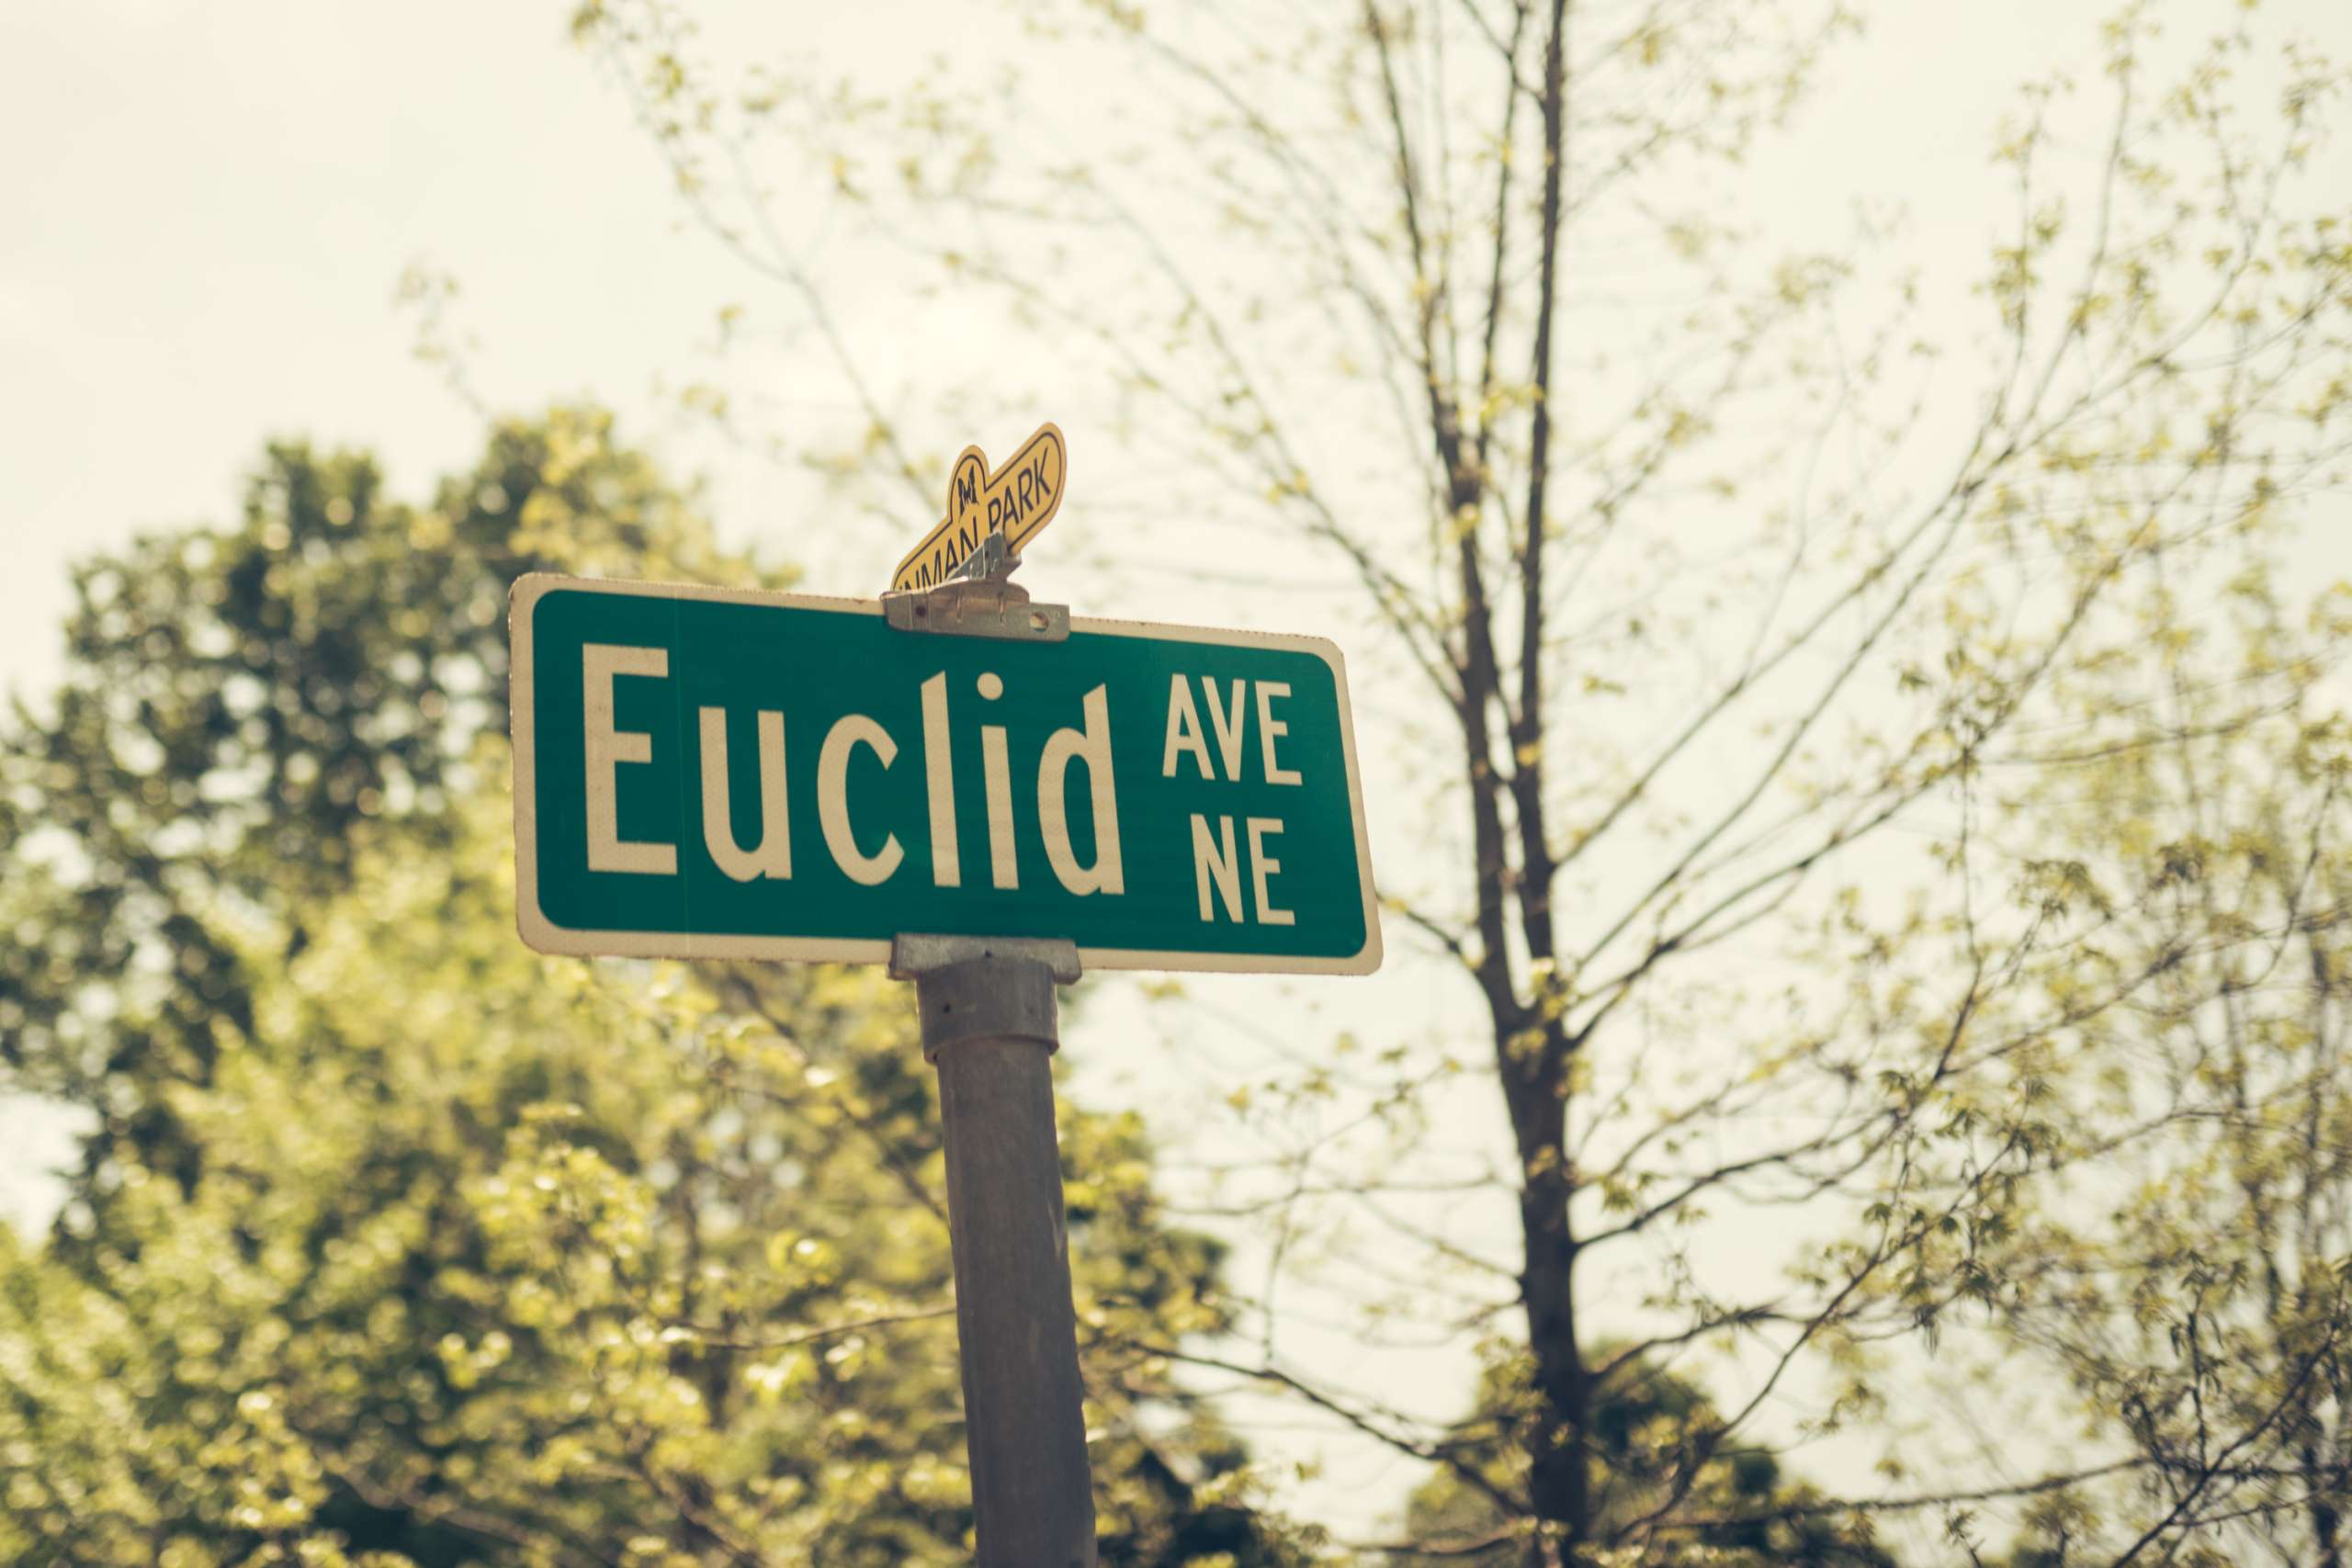 Euclid Avenue street sign.